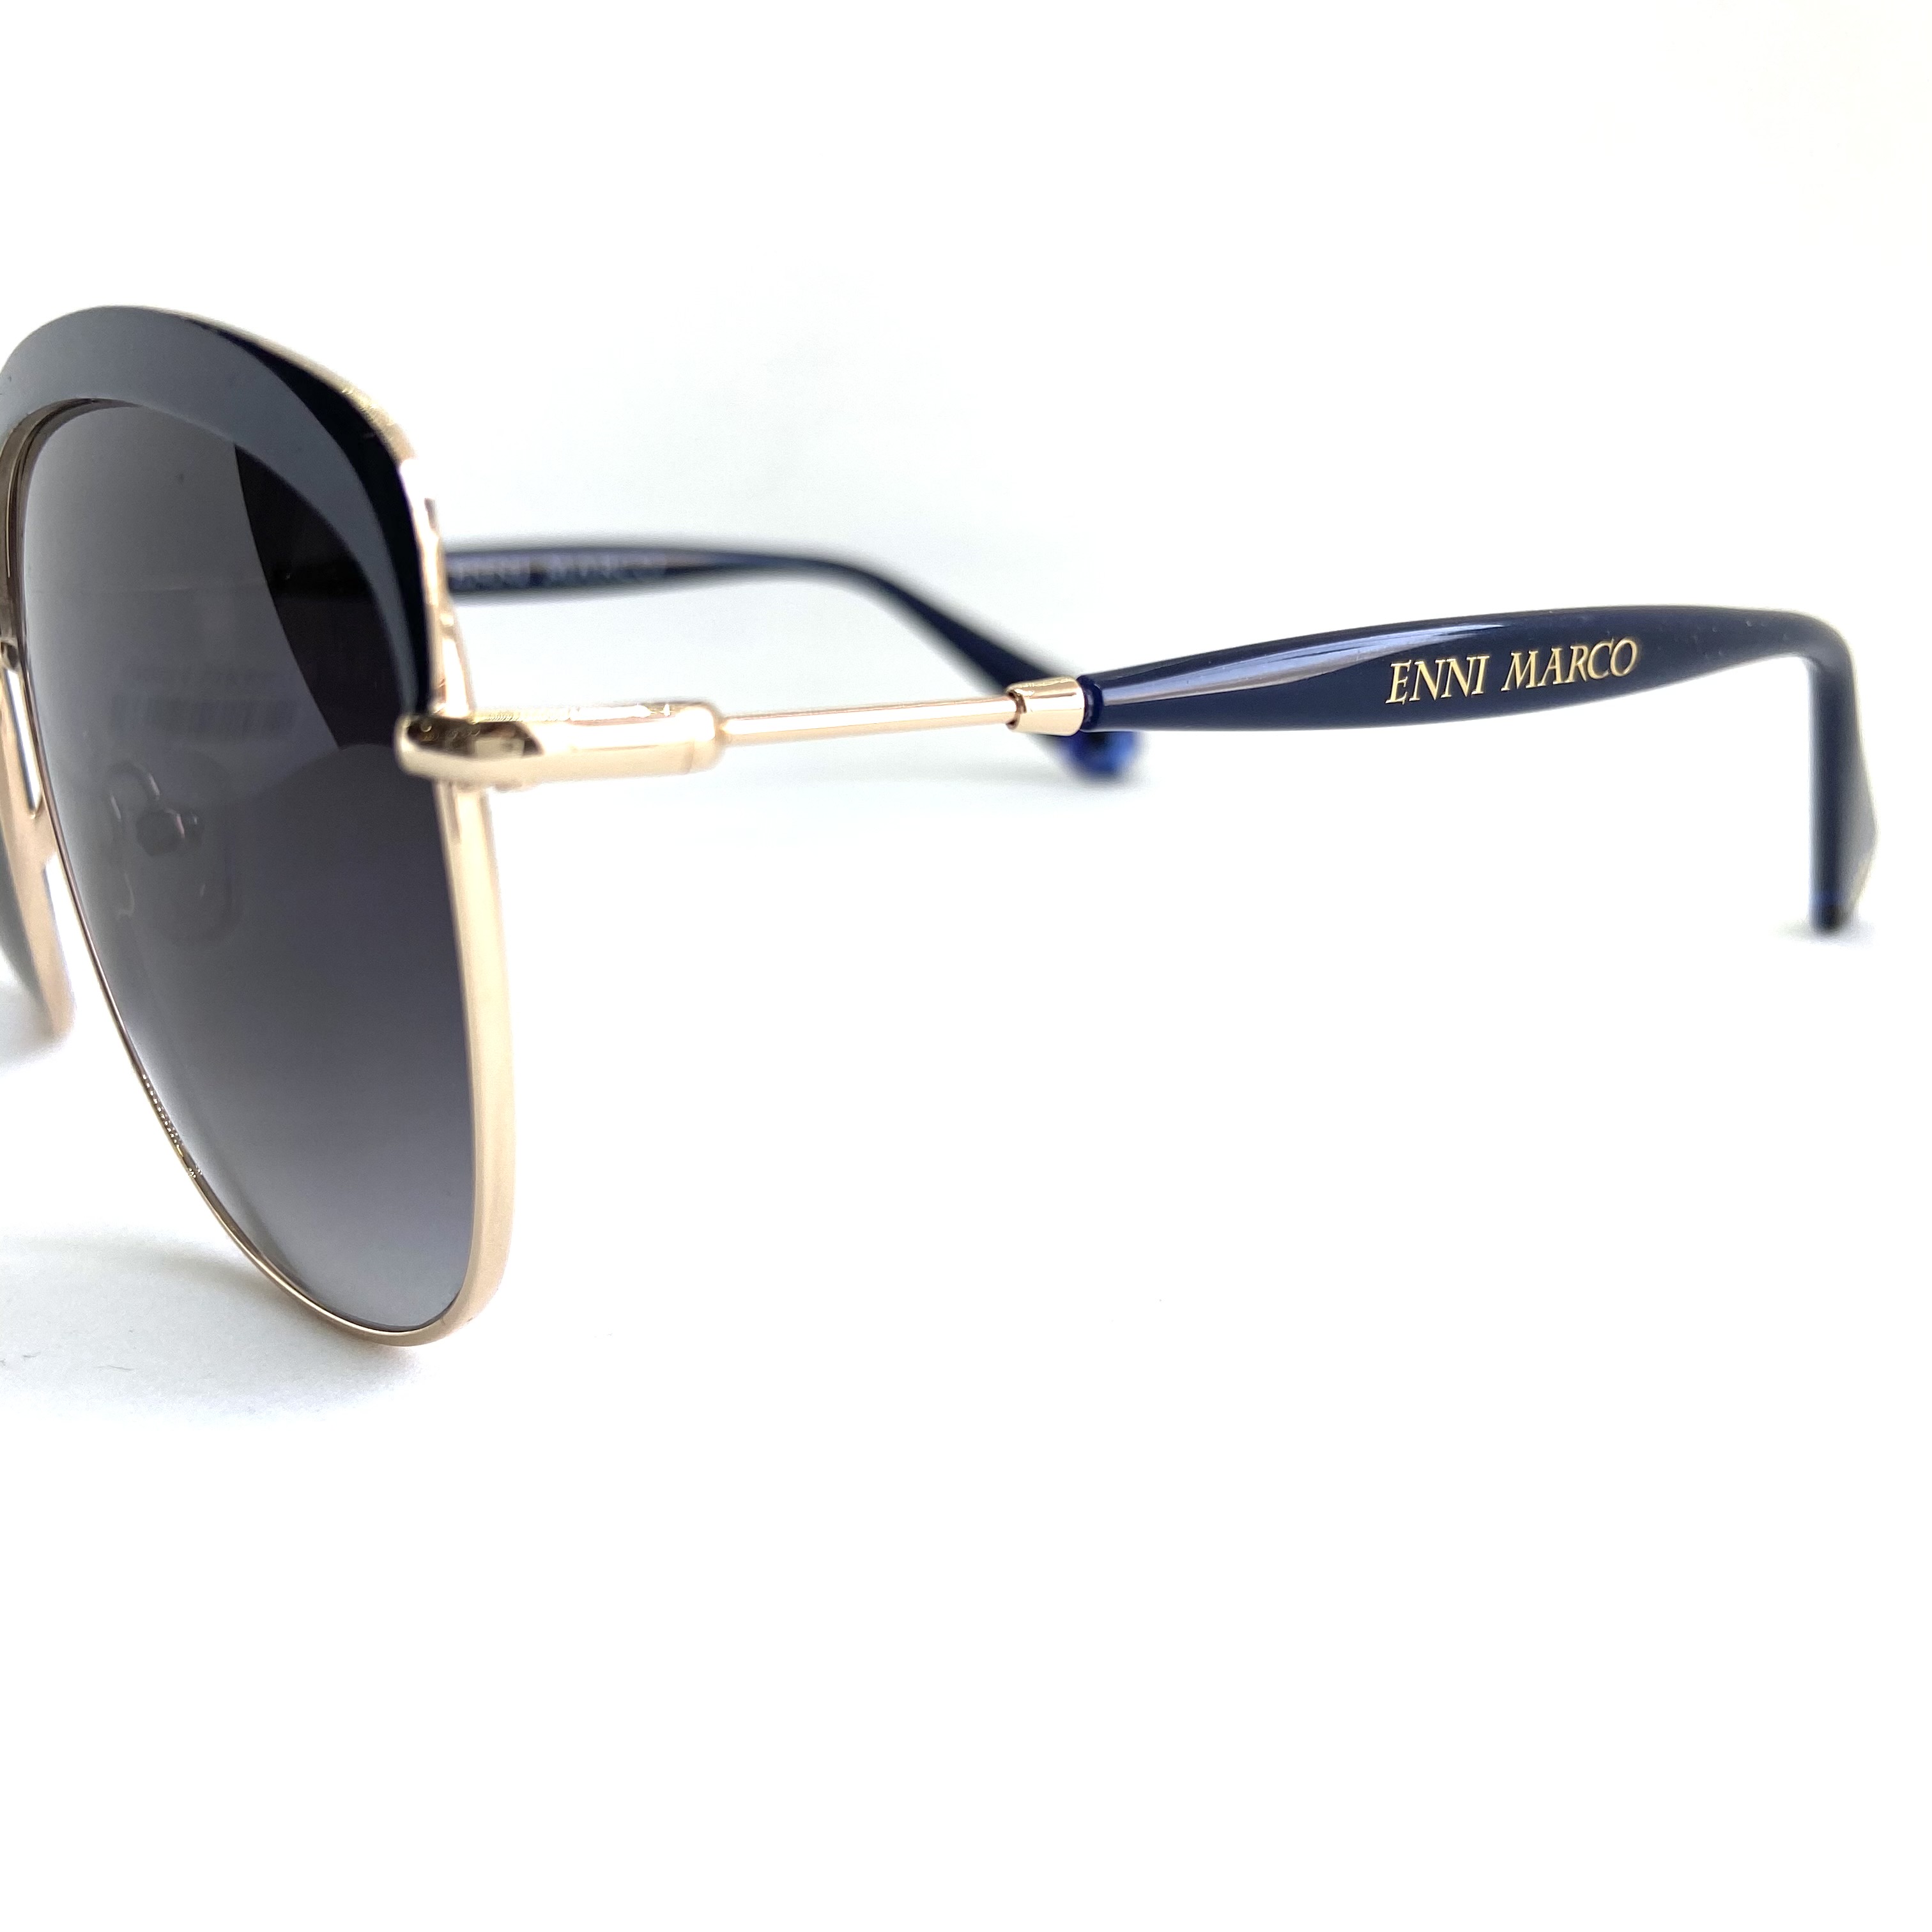 Солнцезащитные очки Enni Marco модель IS 11-537